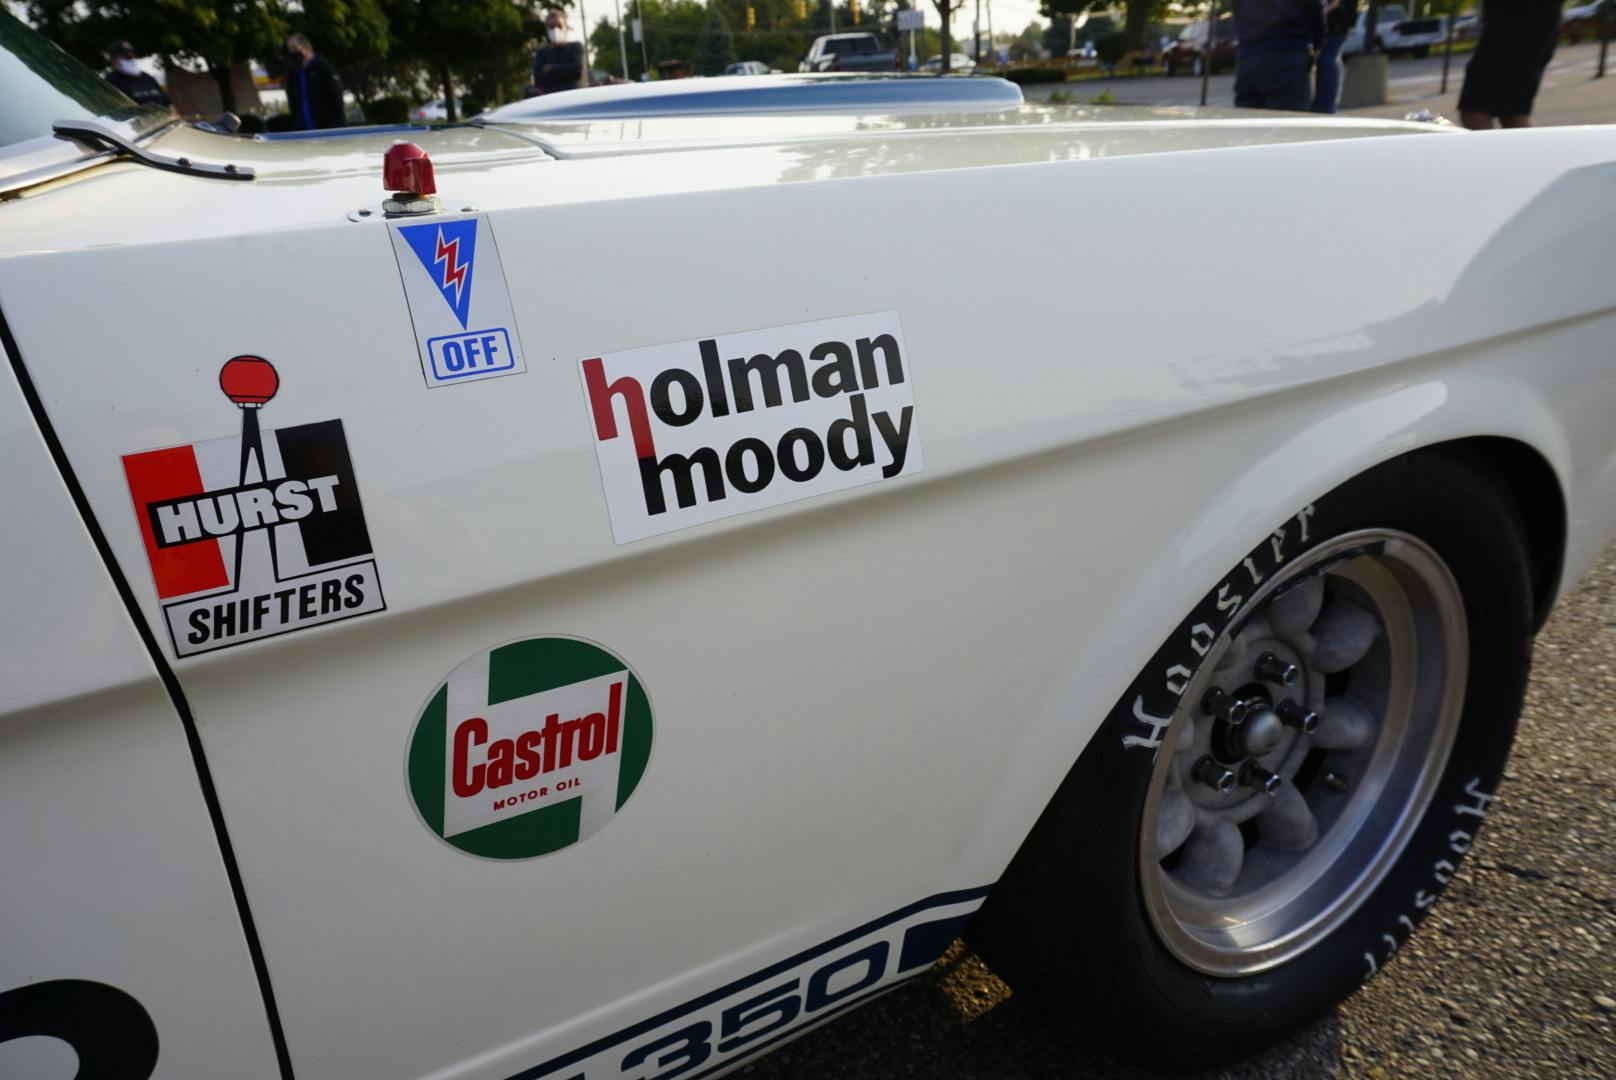 1965 Shelby GT350 holman moody sticker